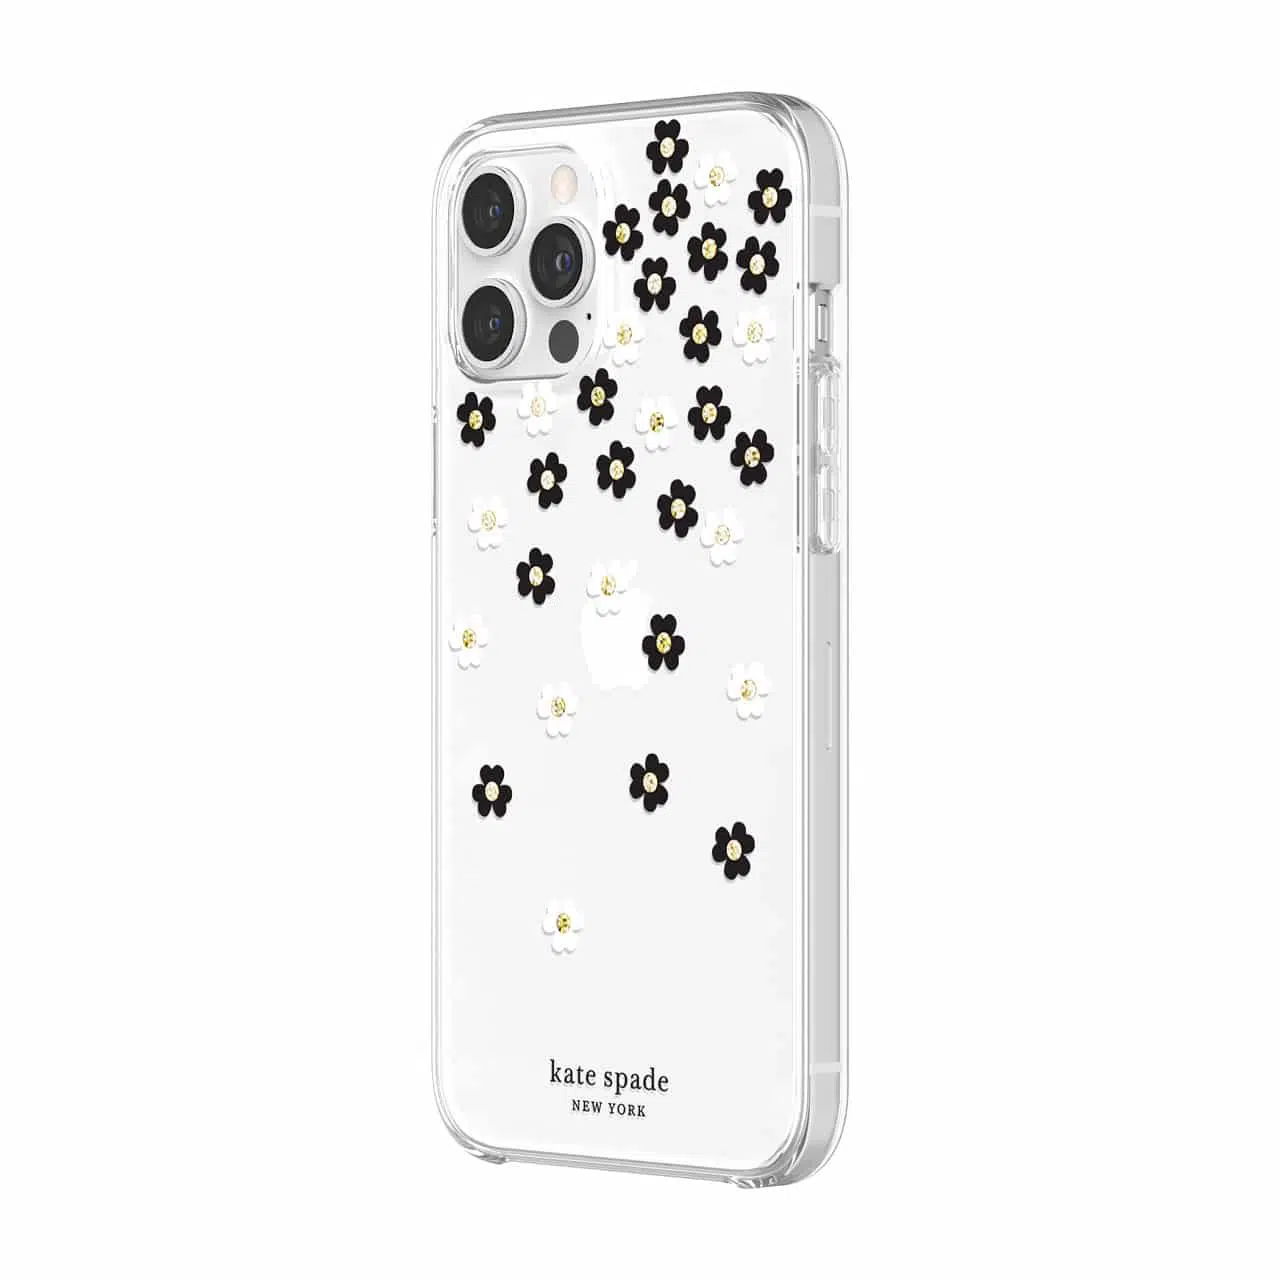 เคส Kate Spade New York รุ่น Protective Hardshell Case - iPhone 12 Pro Max - Scattered Flowers Black